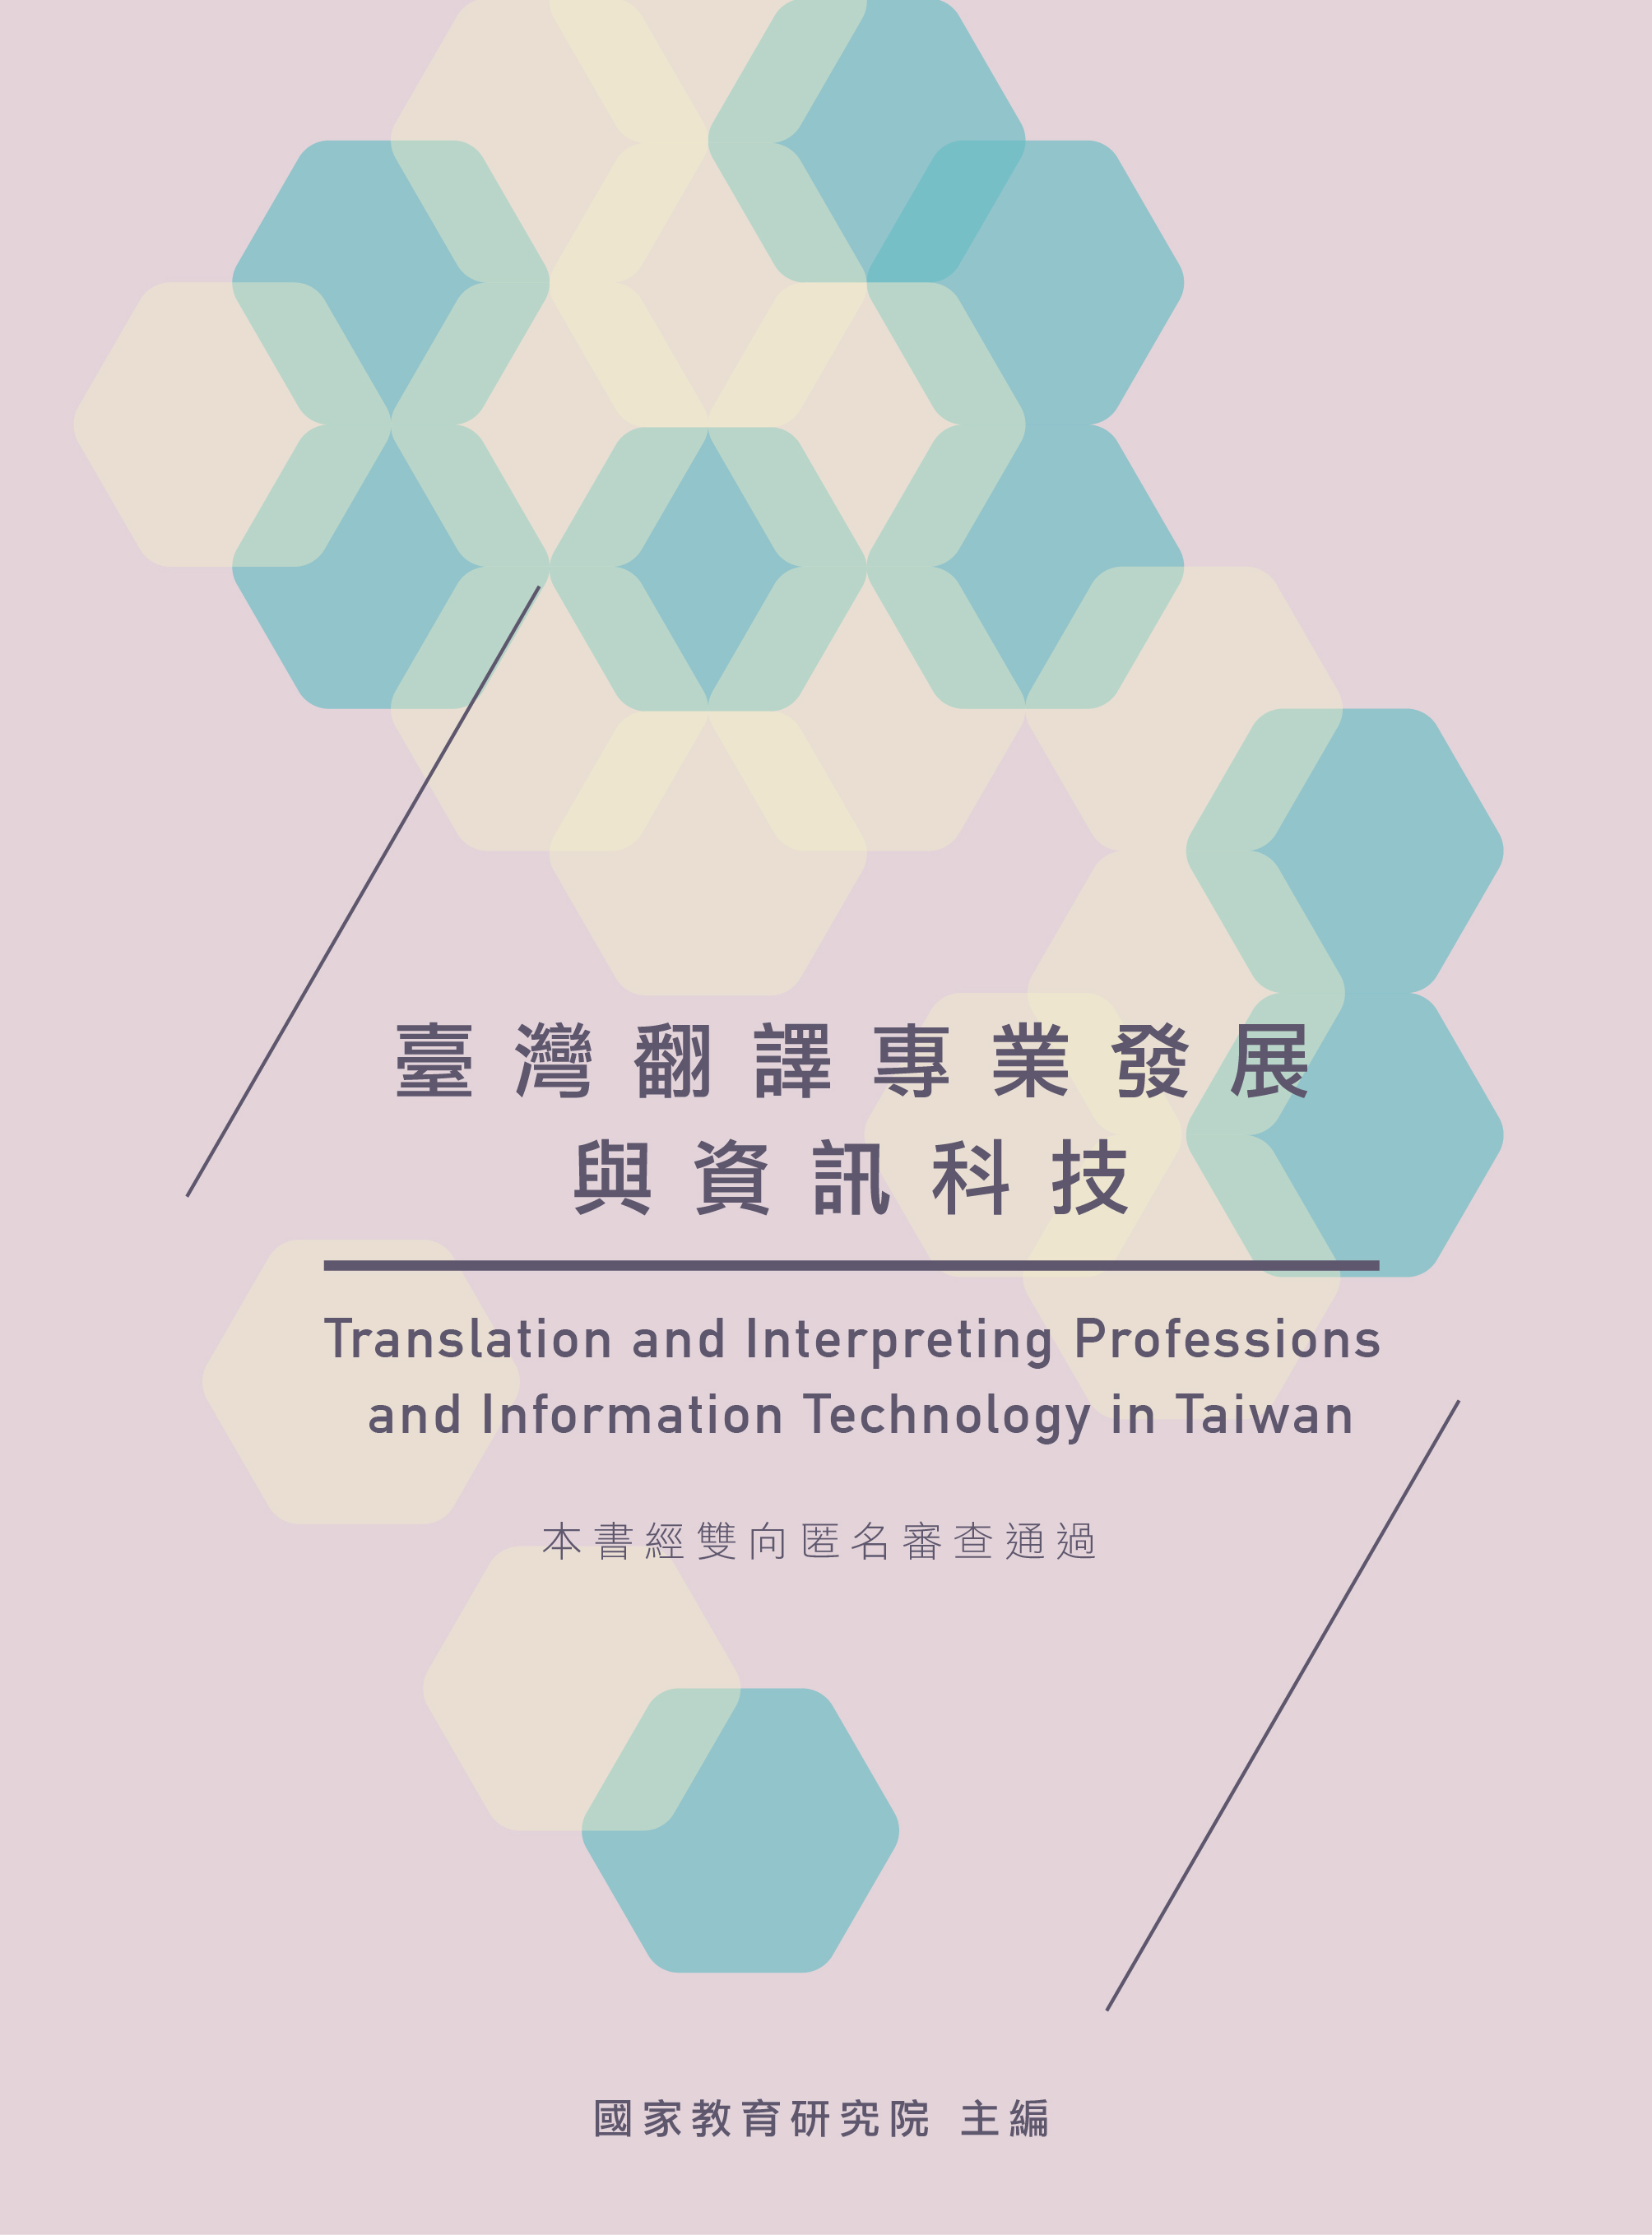 臺灣翻譯專業發展與資訊科技